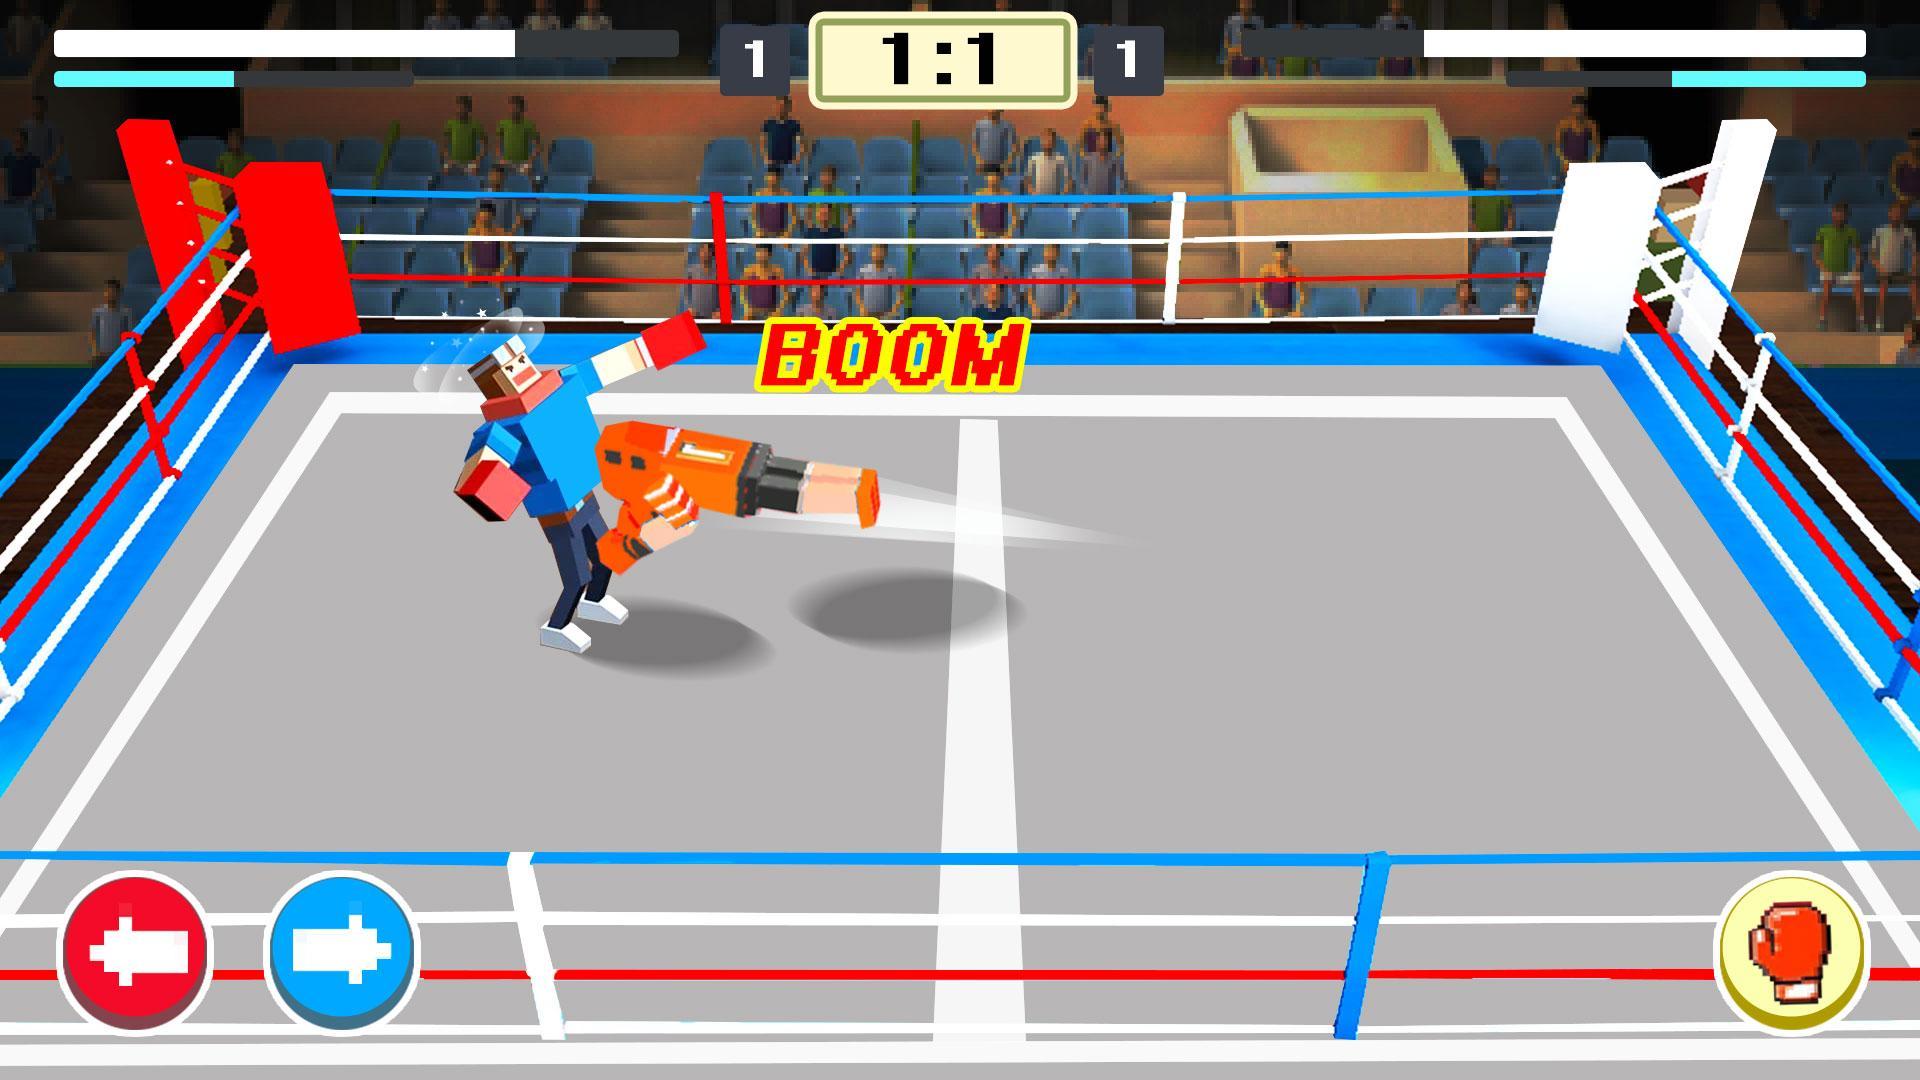 Screenshot 1 of माइन बॉक्सिंग - 2019 स्पोर्ट्स फन वर्ल्ड फाइटिंग गेम 1.0.1